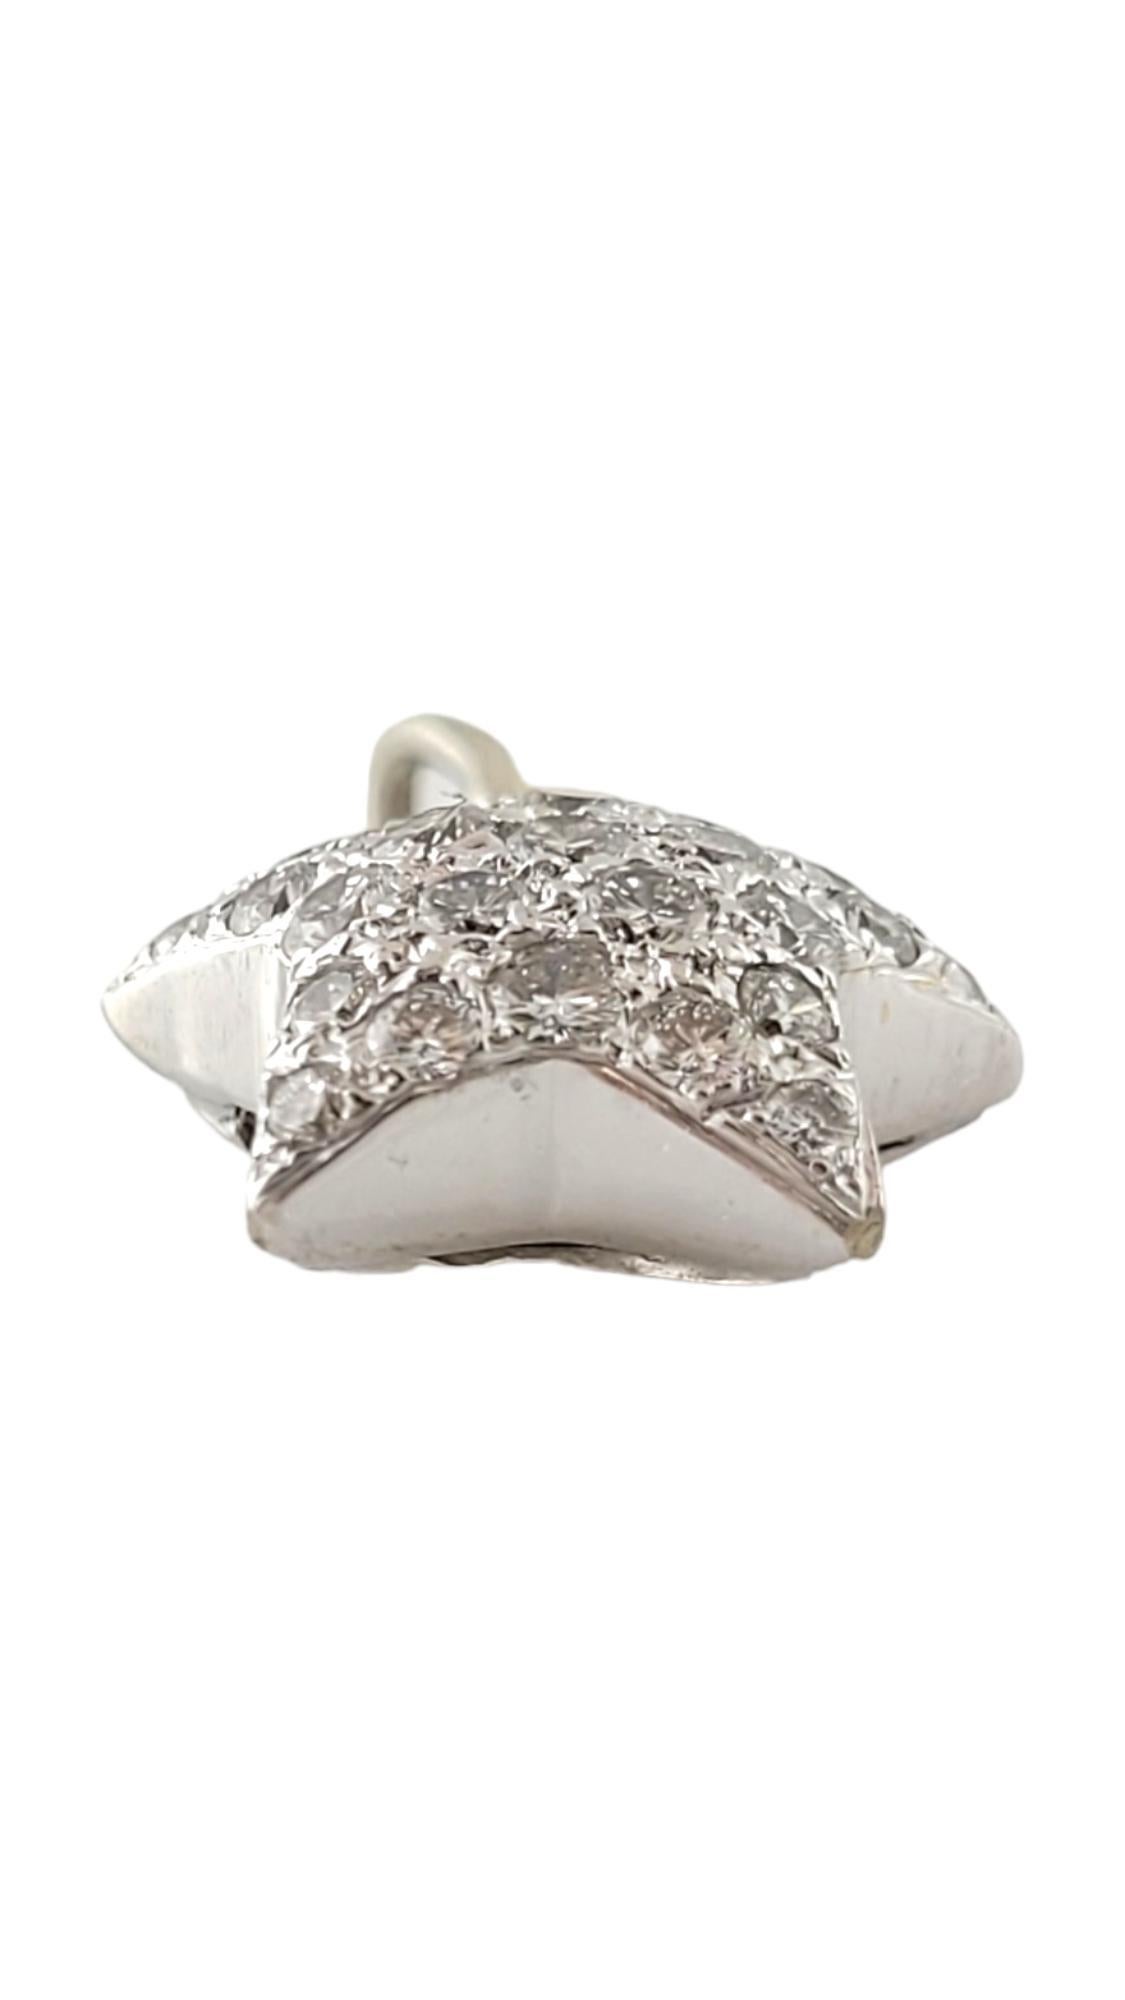 Taille brillant Pendentif étoile moelleuse en or blanc 15 carats pavé de diamants n°16906